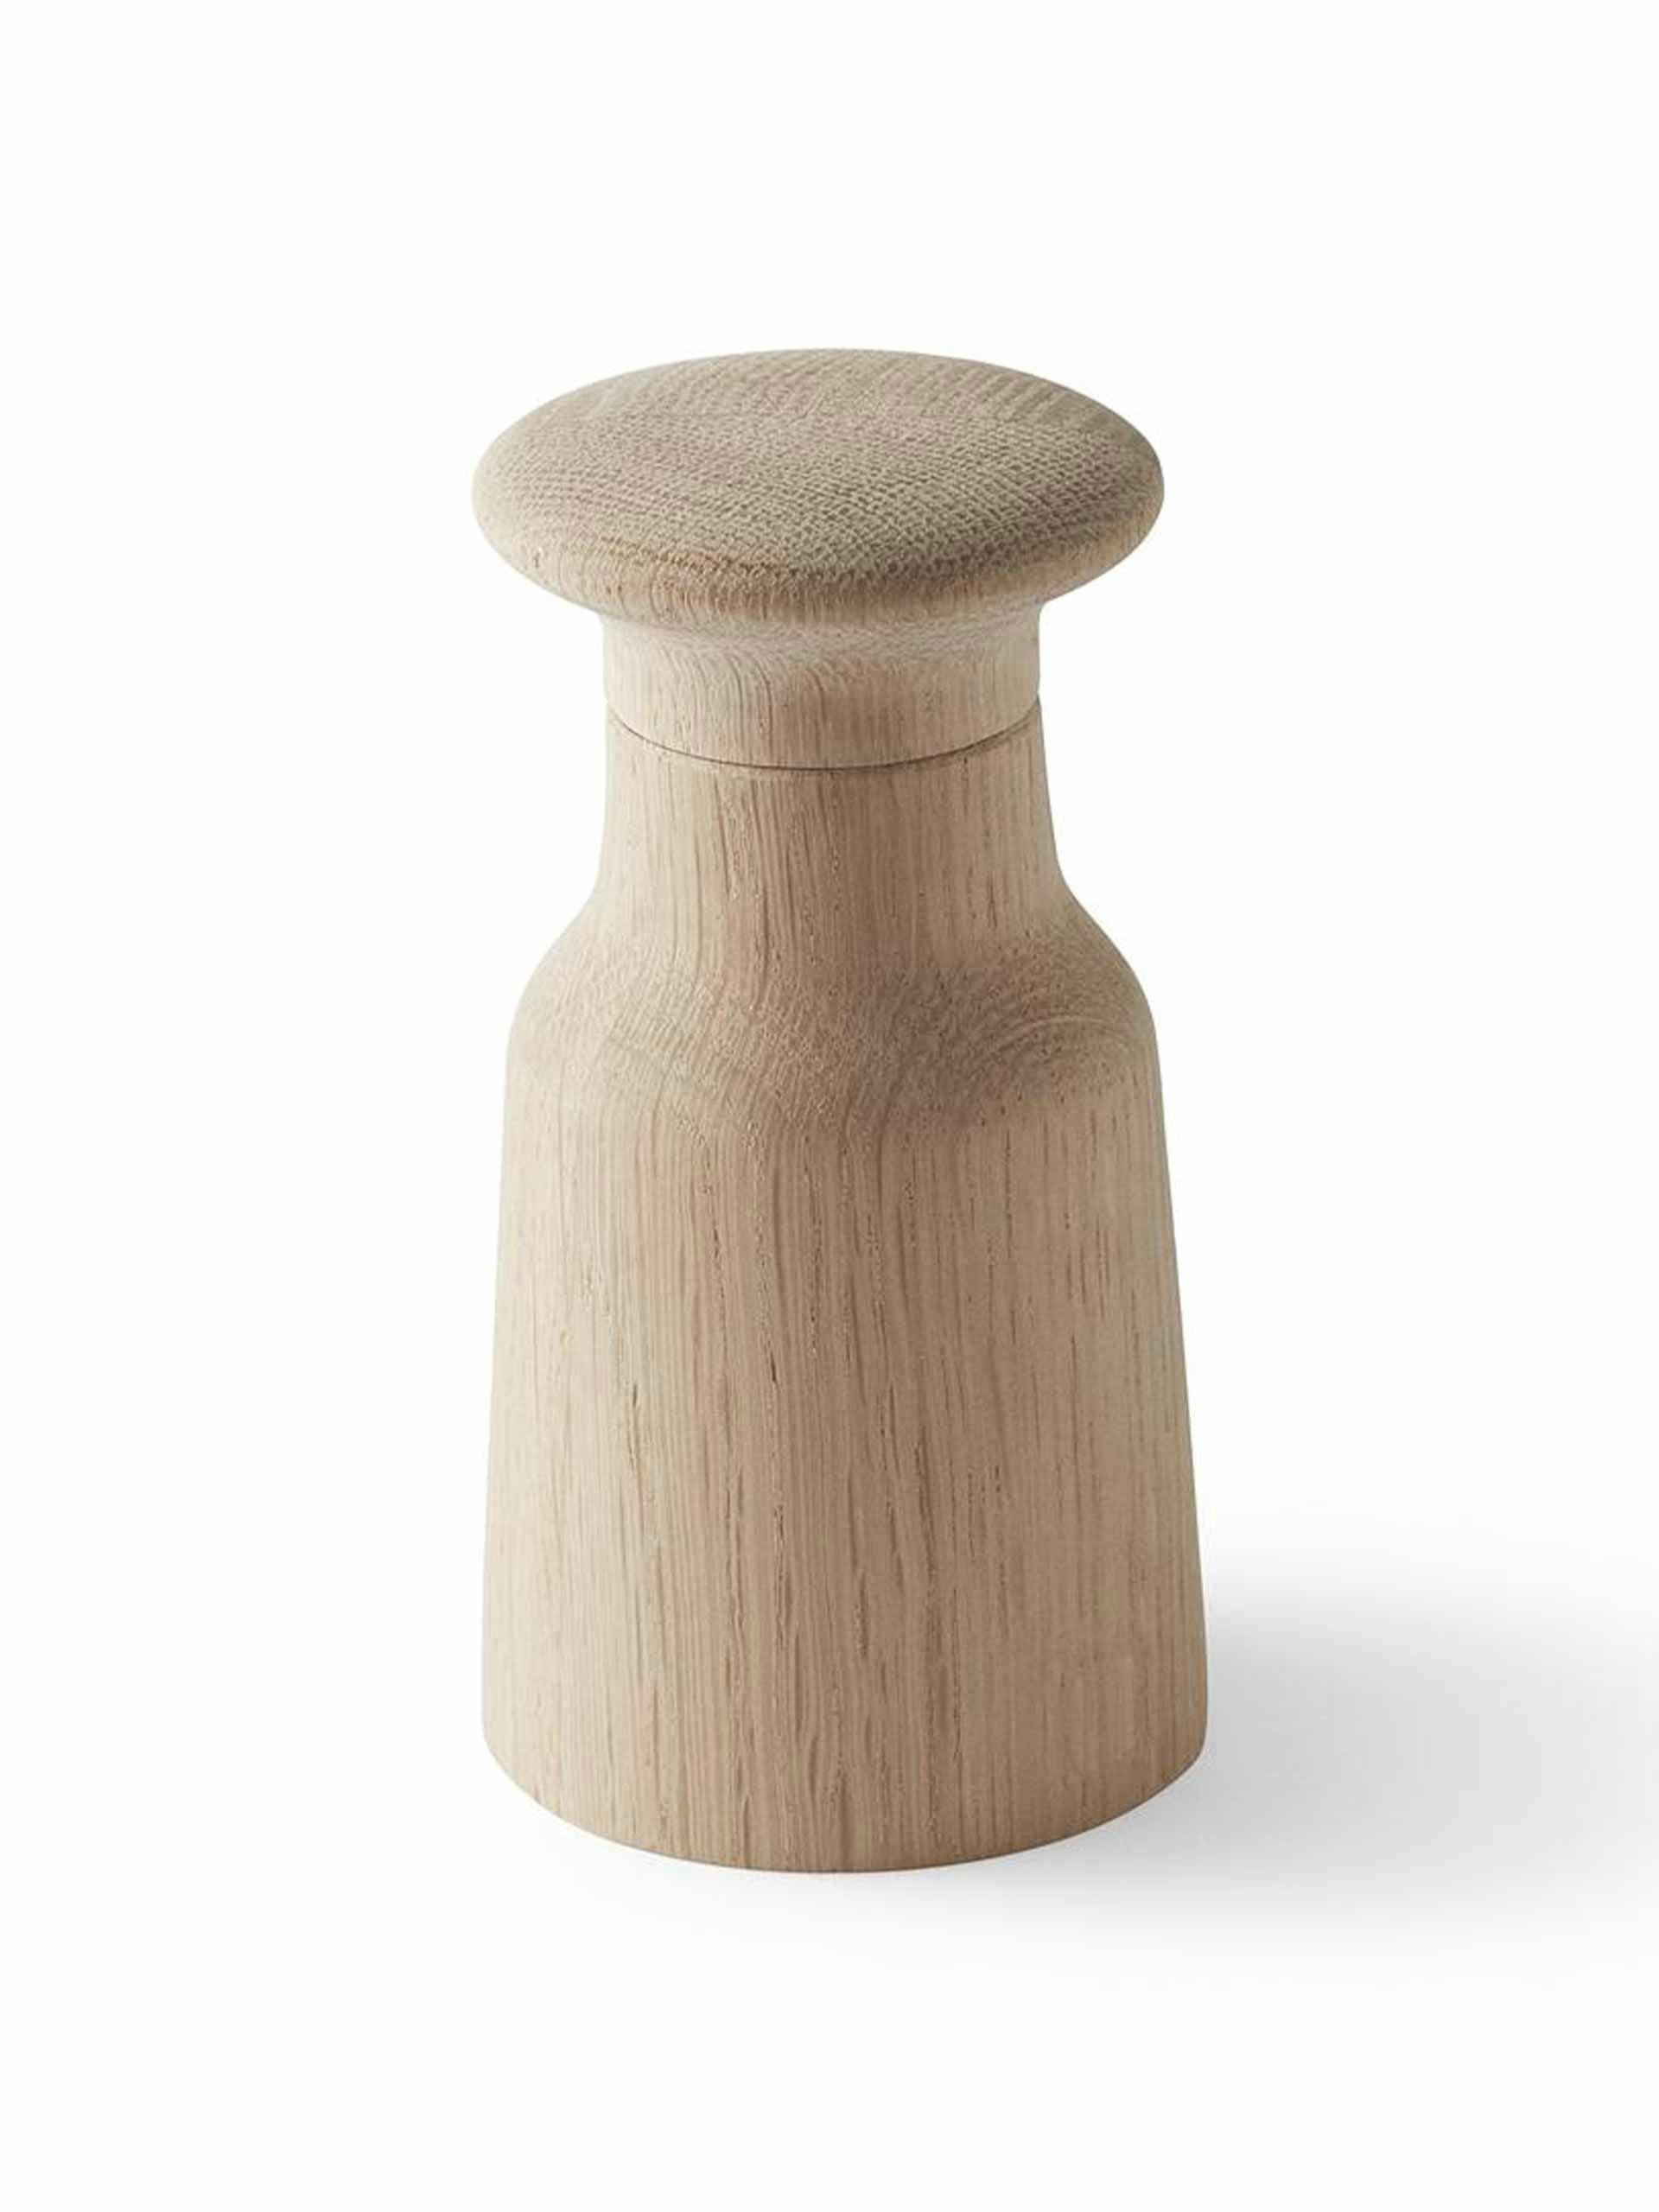 Oak salt or pepper grinder